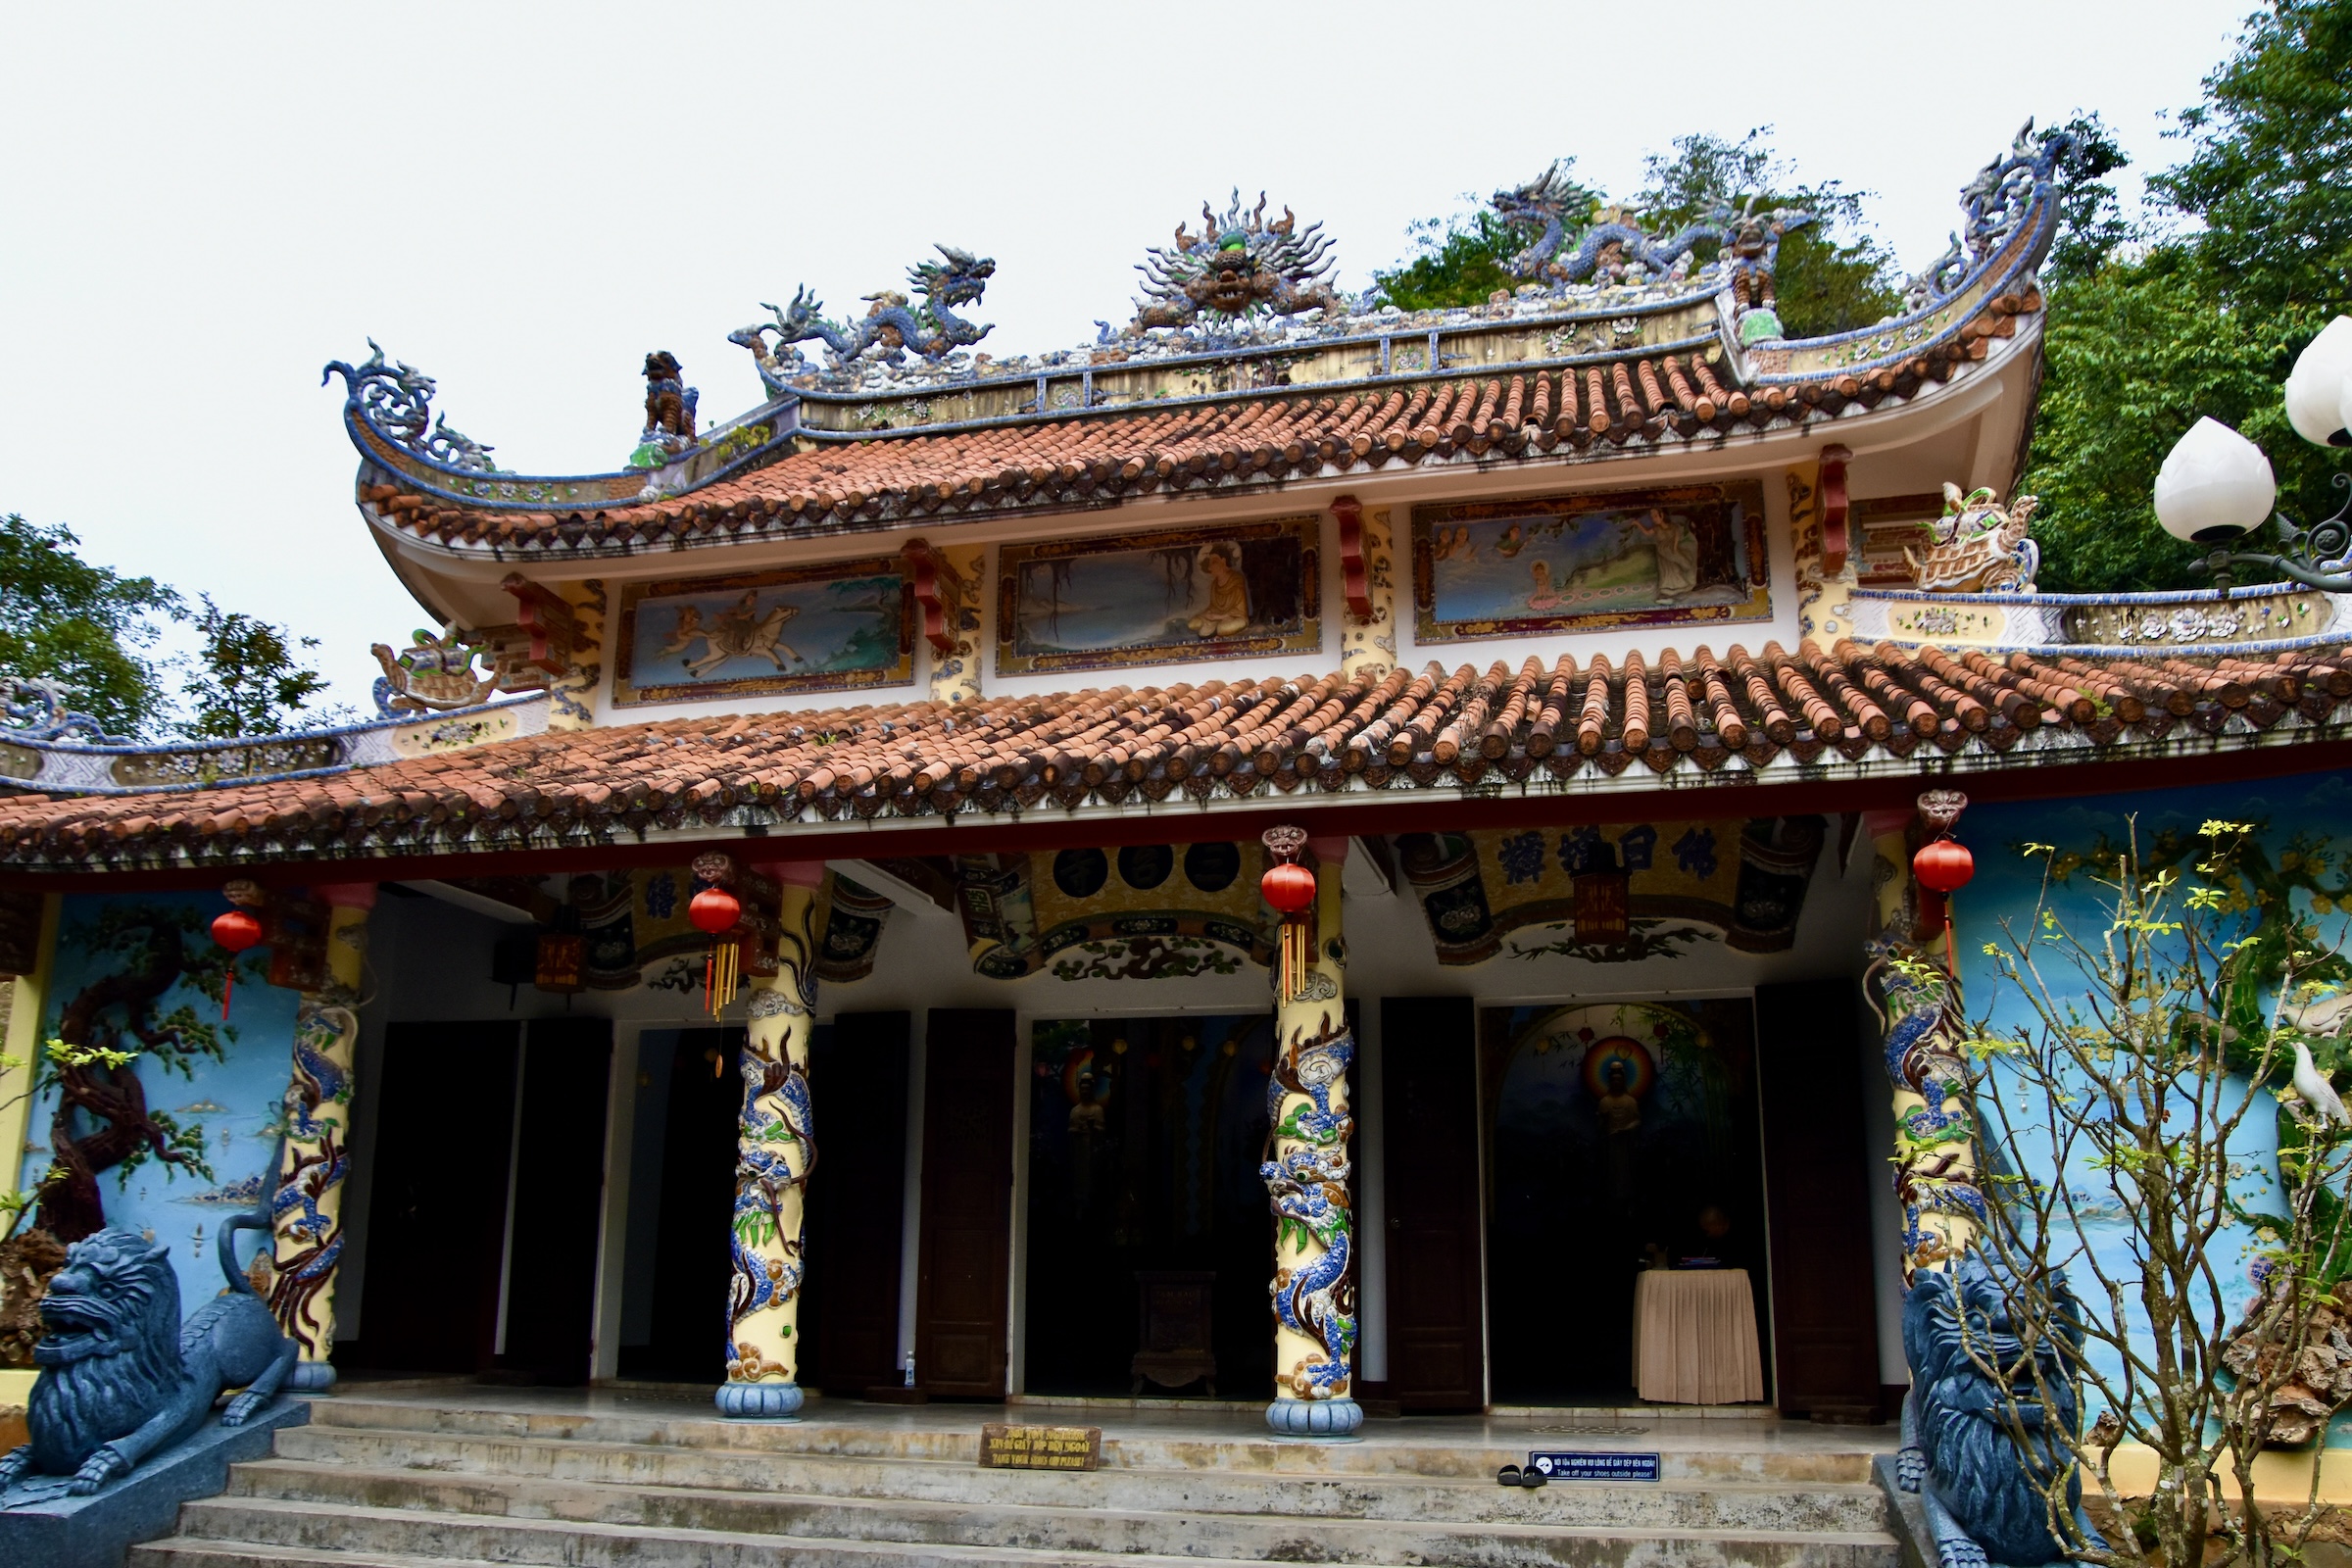 Third Pagoda at Marble Mountain, Da Nang